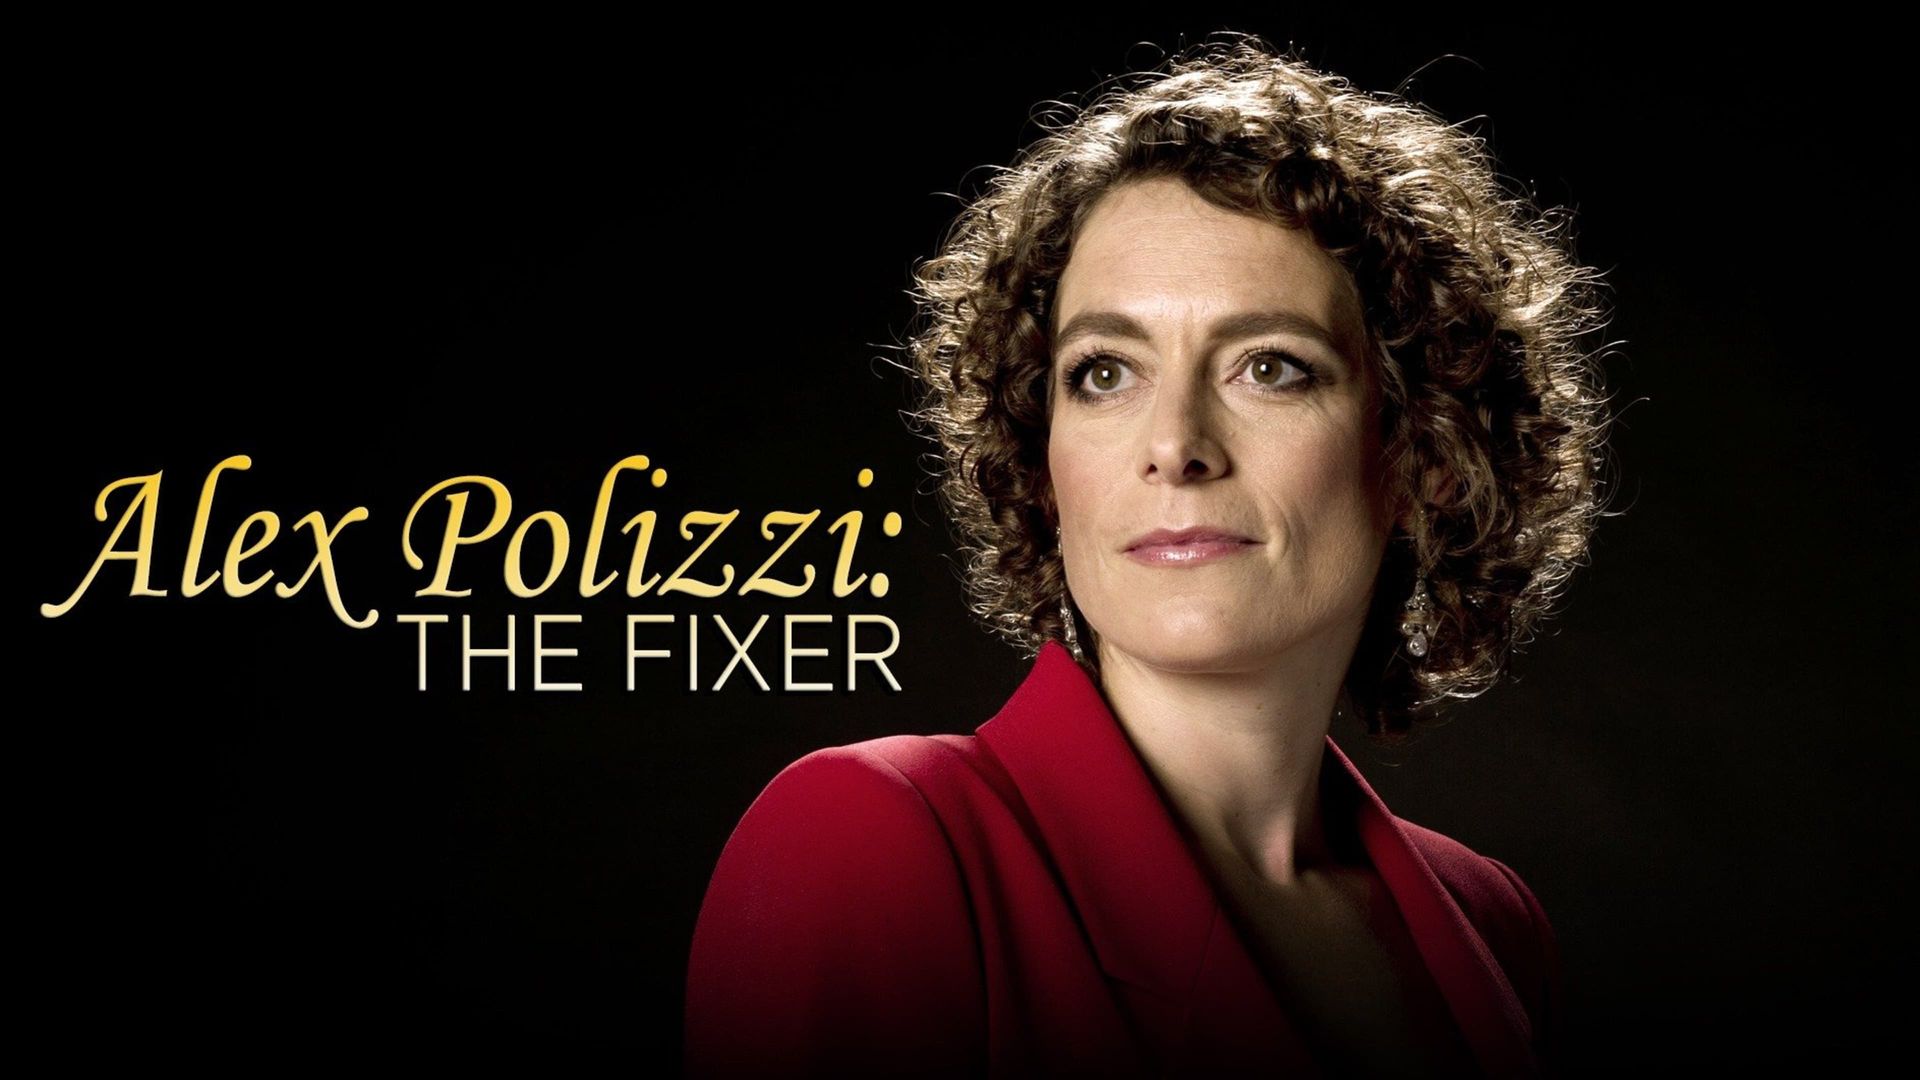 Alex Polizzi: The Fixer background